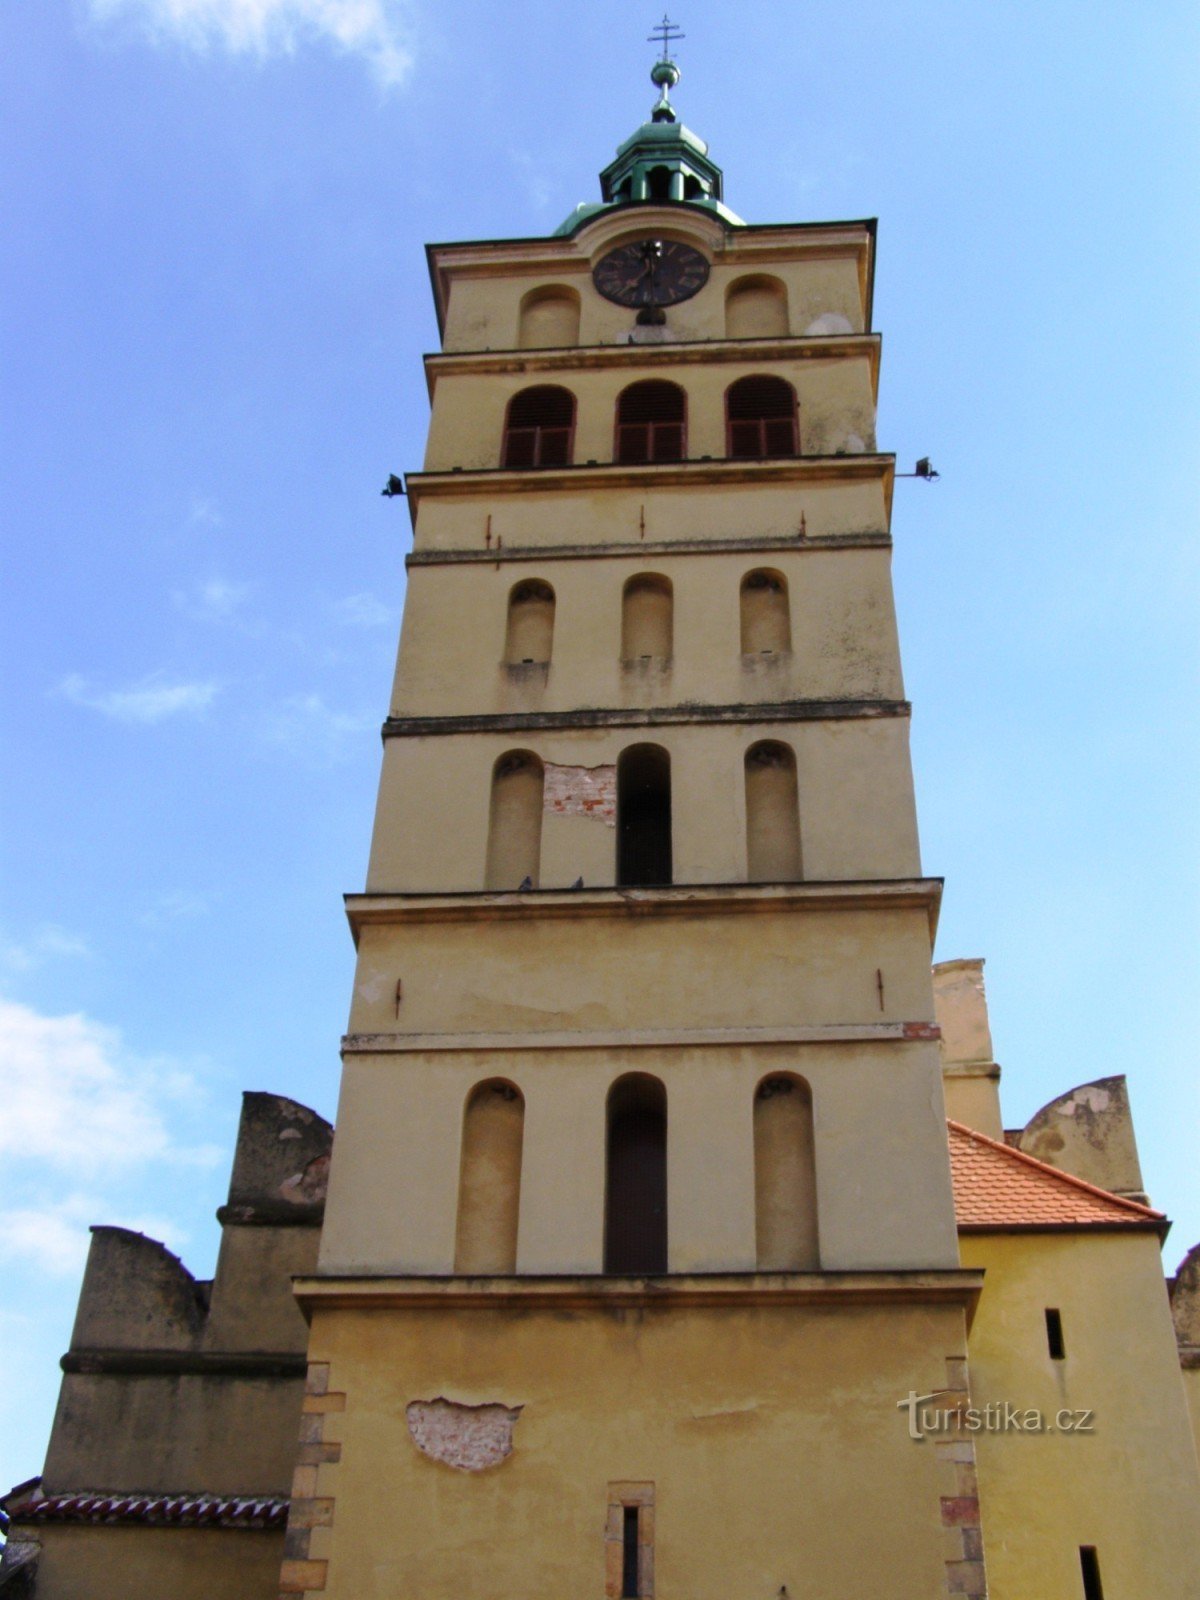 Chlumec nad Cidlinou - biserica Sf. Voršilas